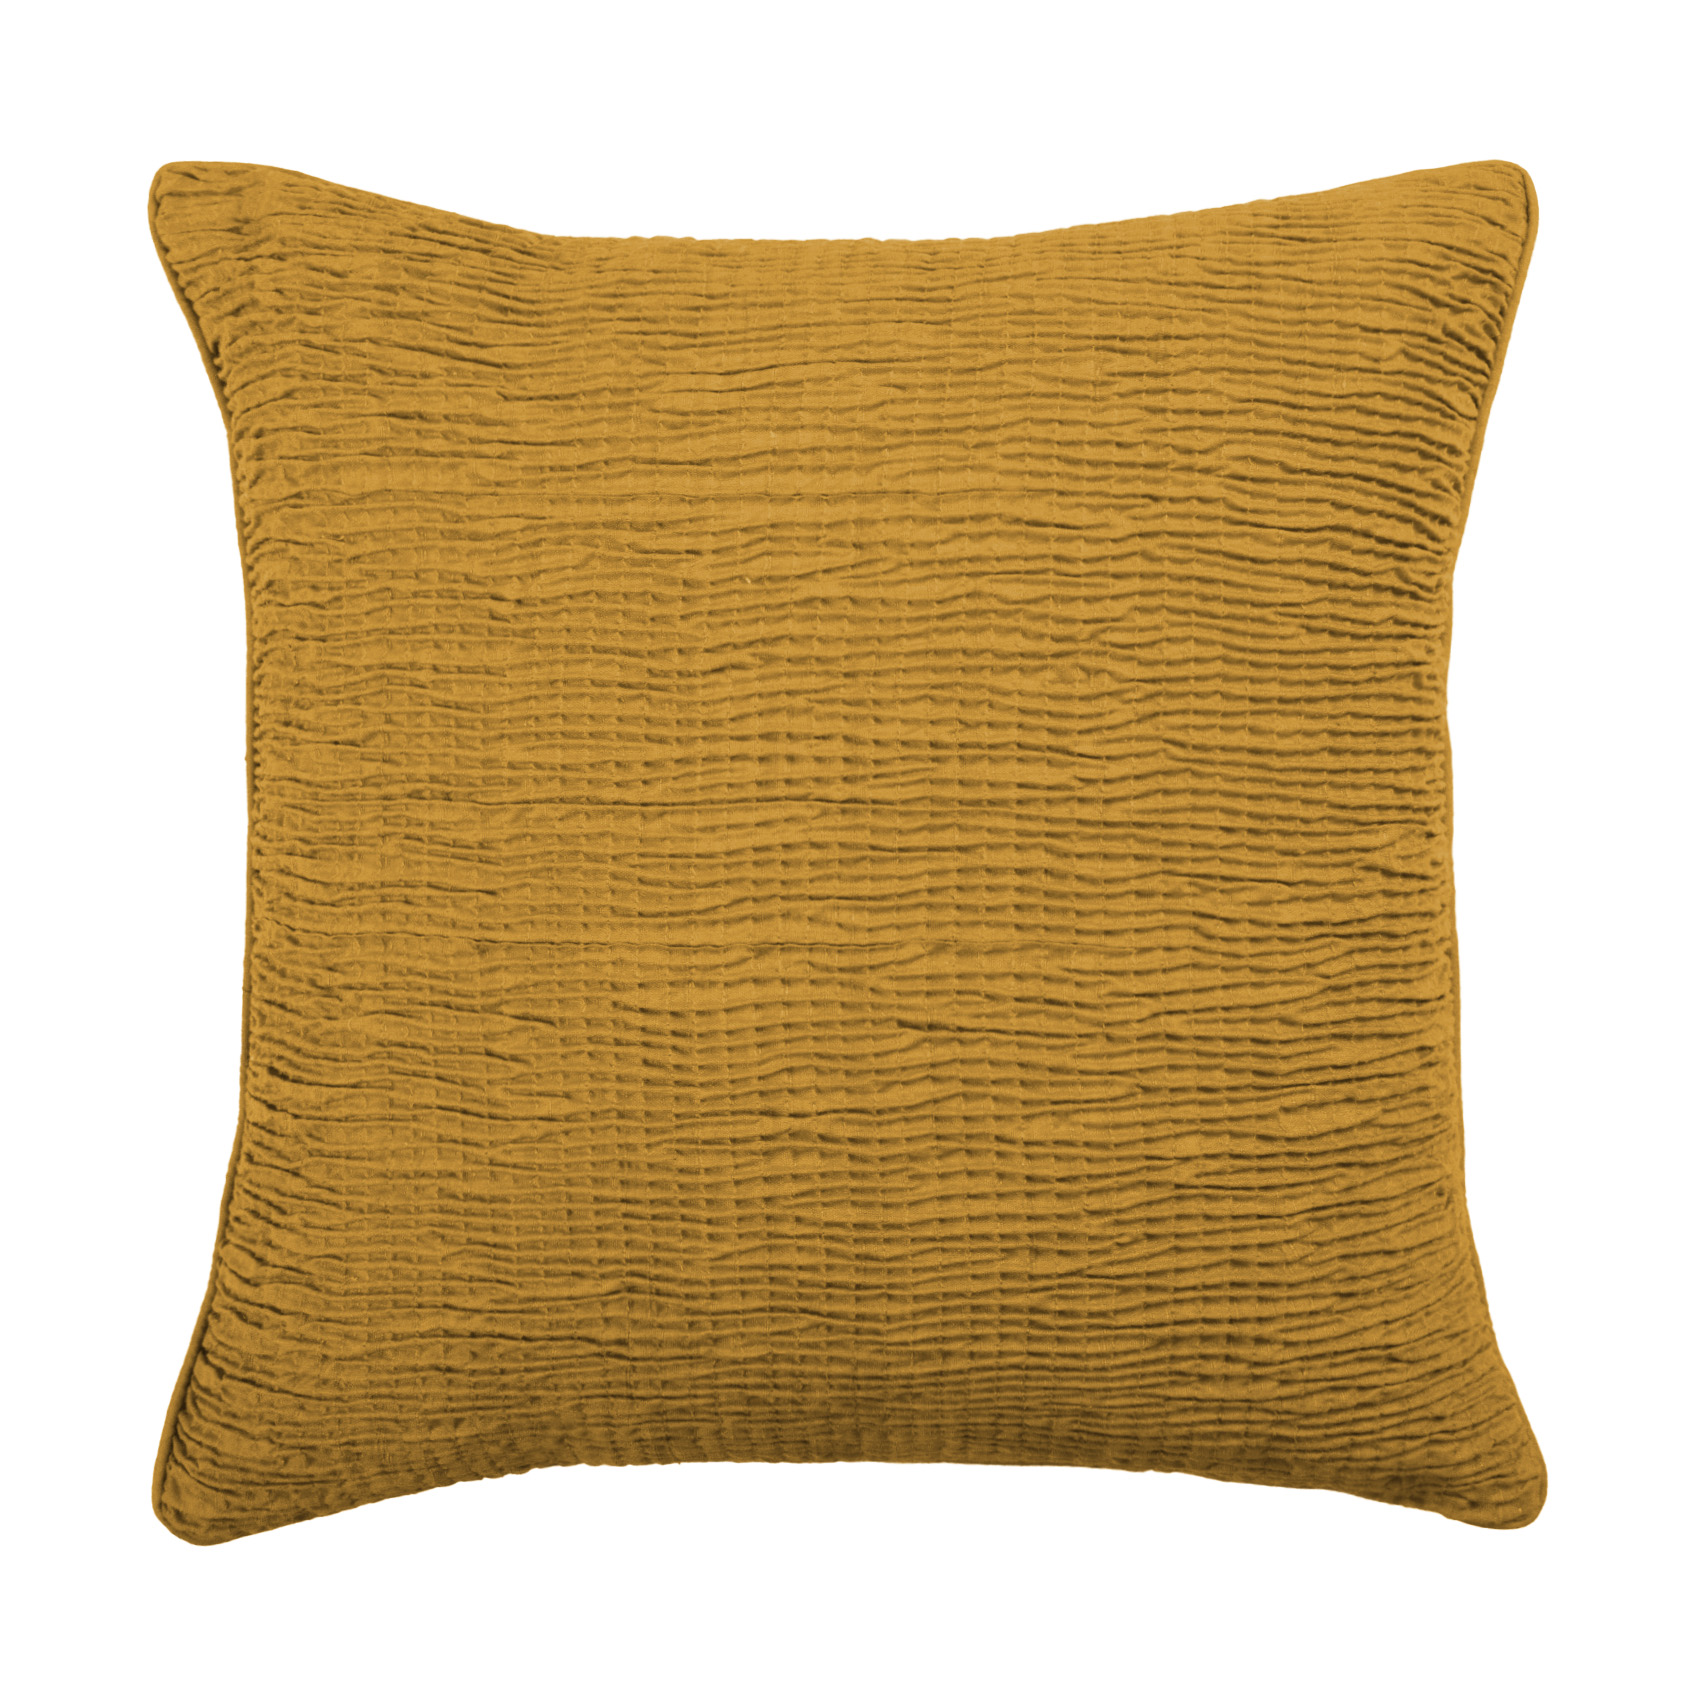 Rainfall Marigold Cushion